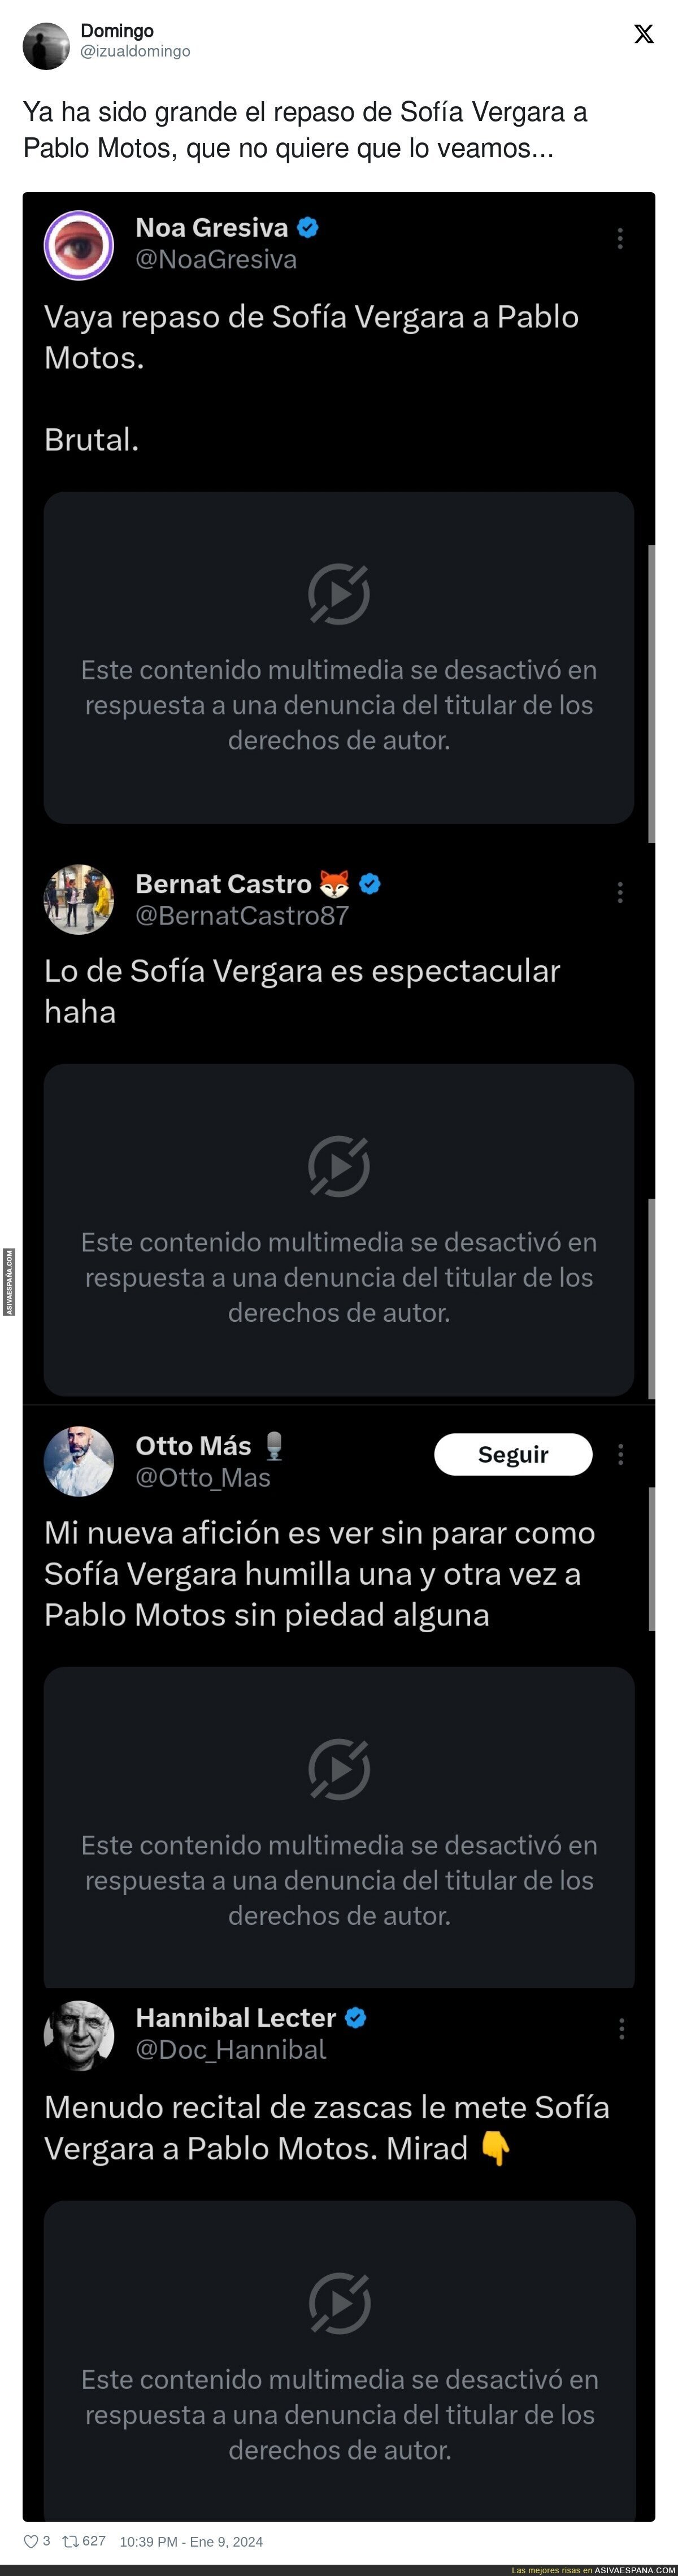 'El Hormiguero' está censurando el repaso de Sofía Vergara a Pablo Motos